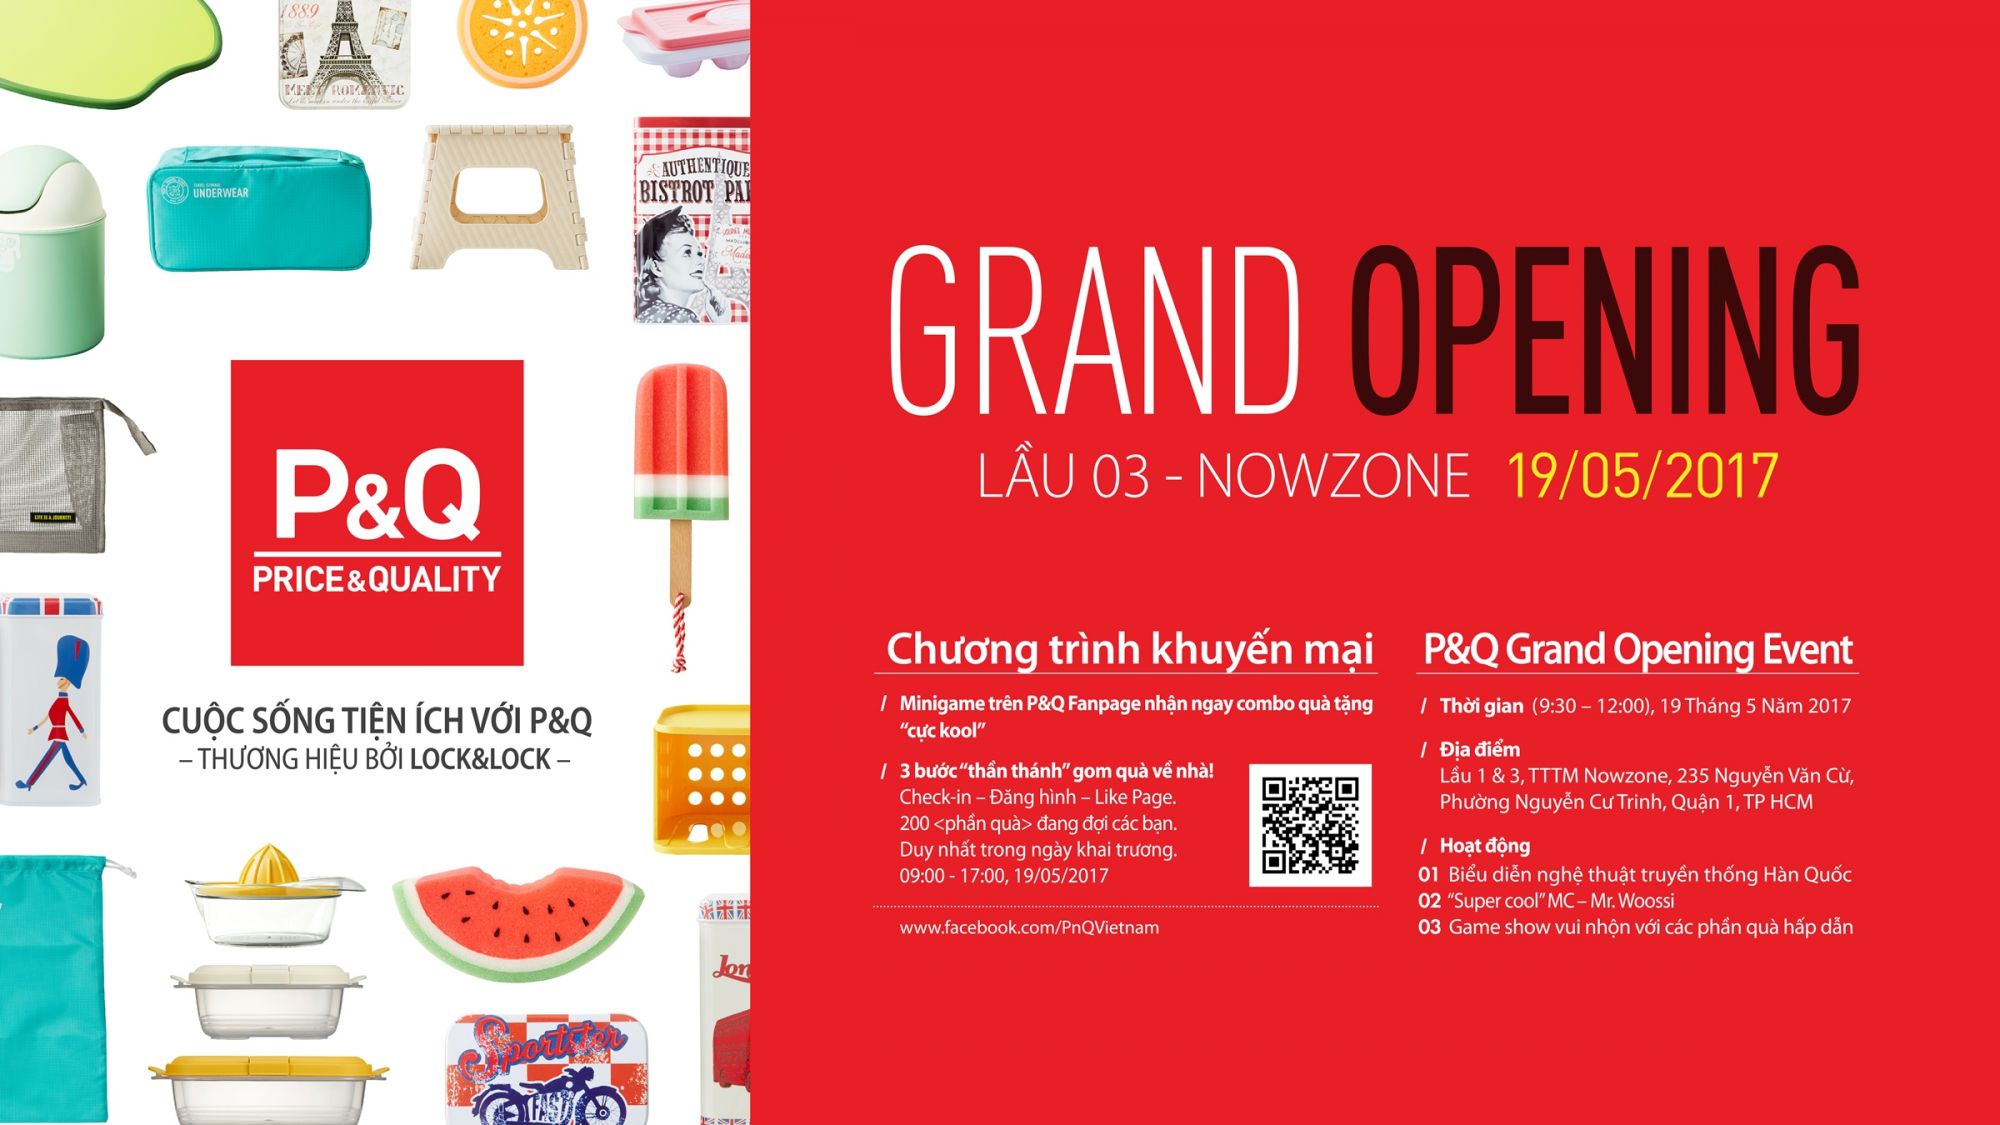 PQ grand opening